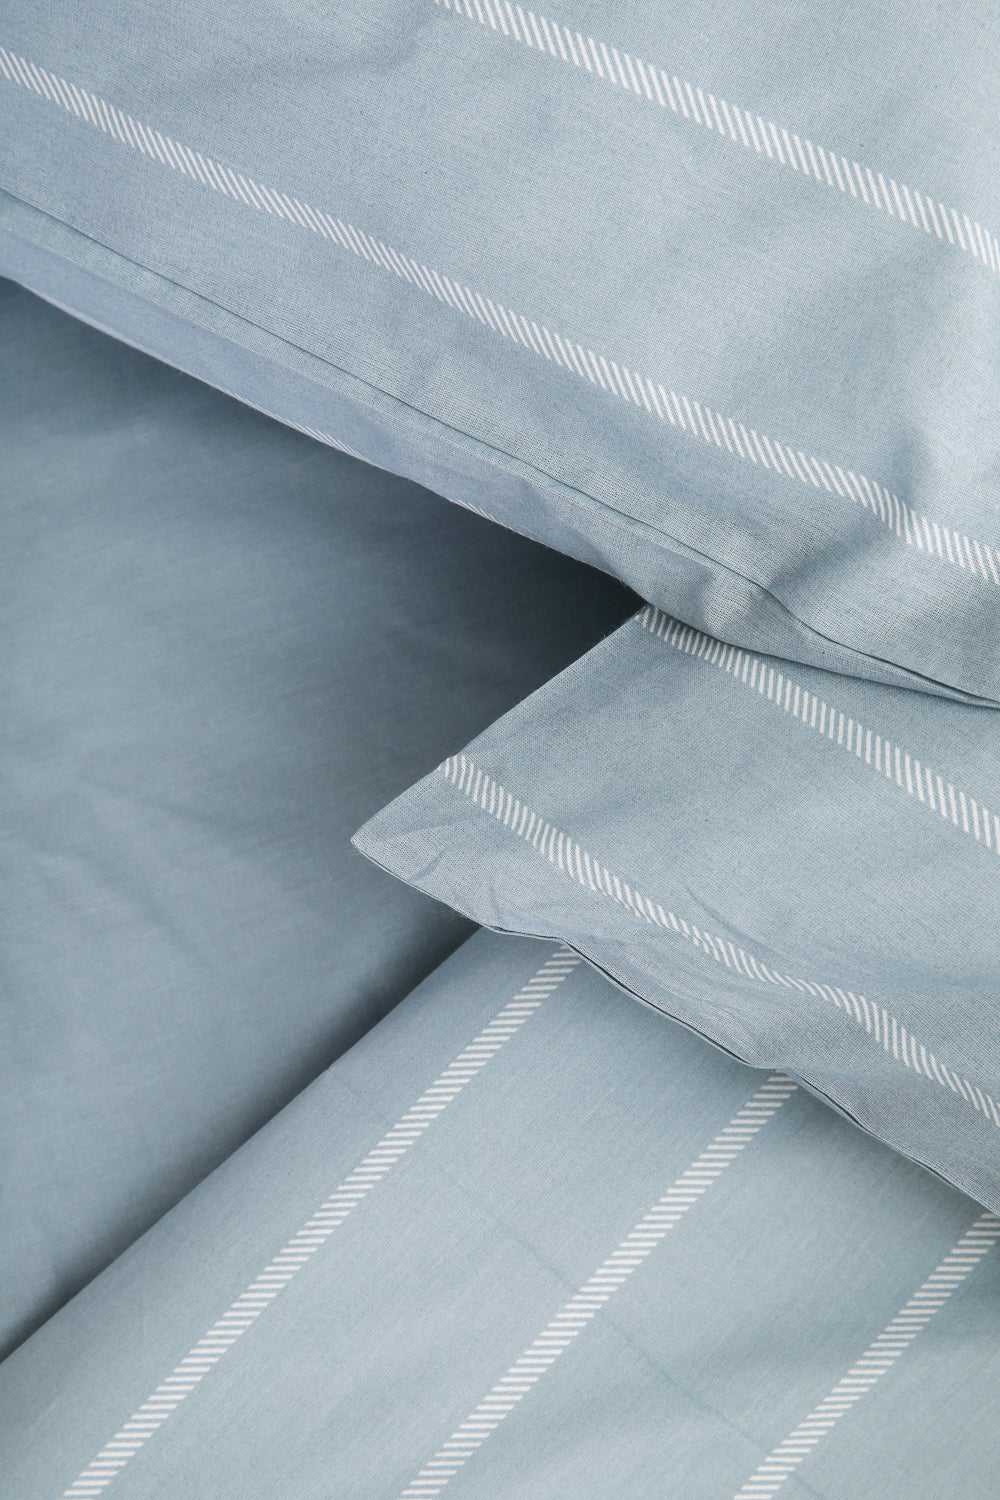 סט מצעים מיטה וחצי 120/200 ס"מ 100% כותנה דגם תהילה גוון לבן וכחול